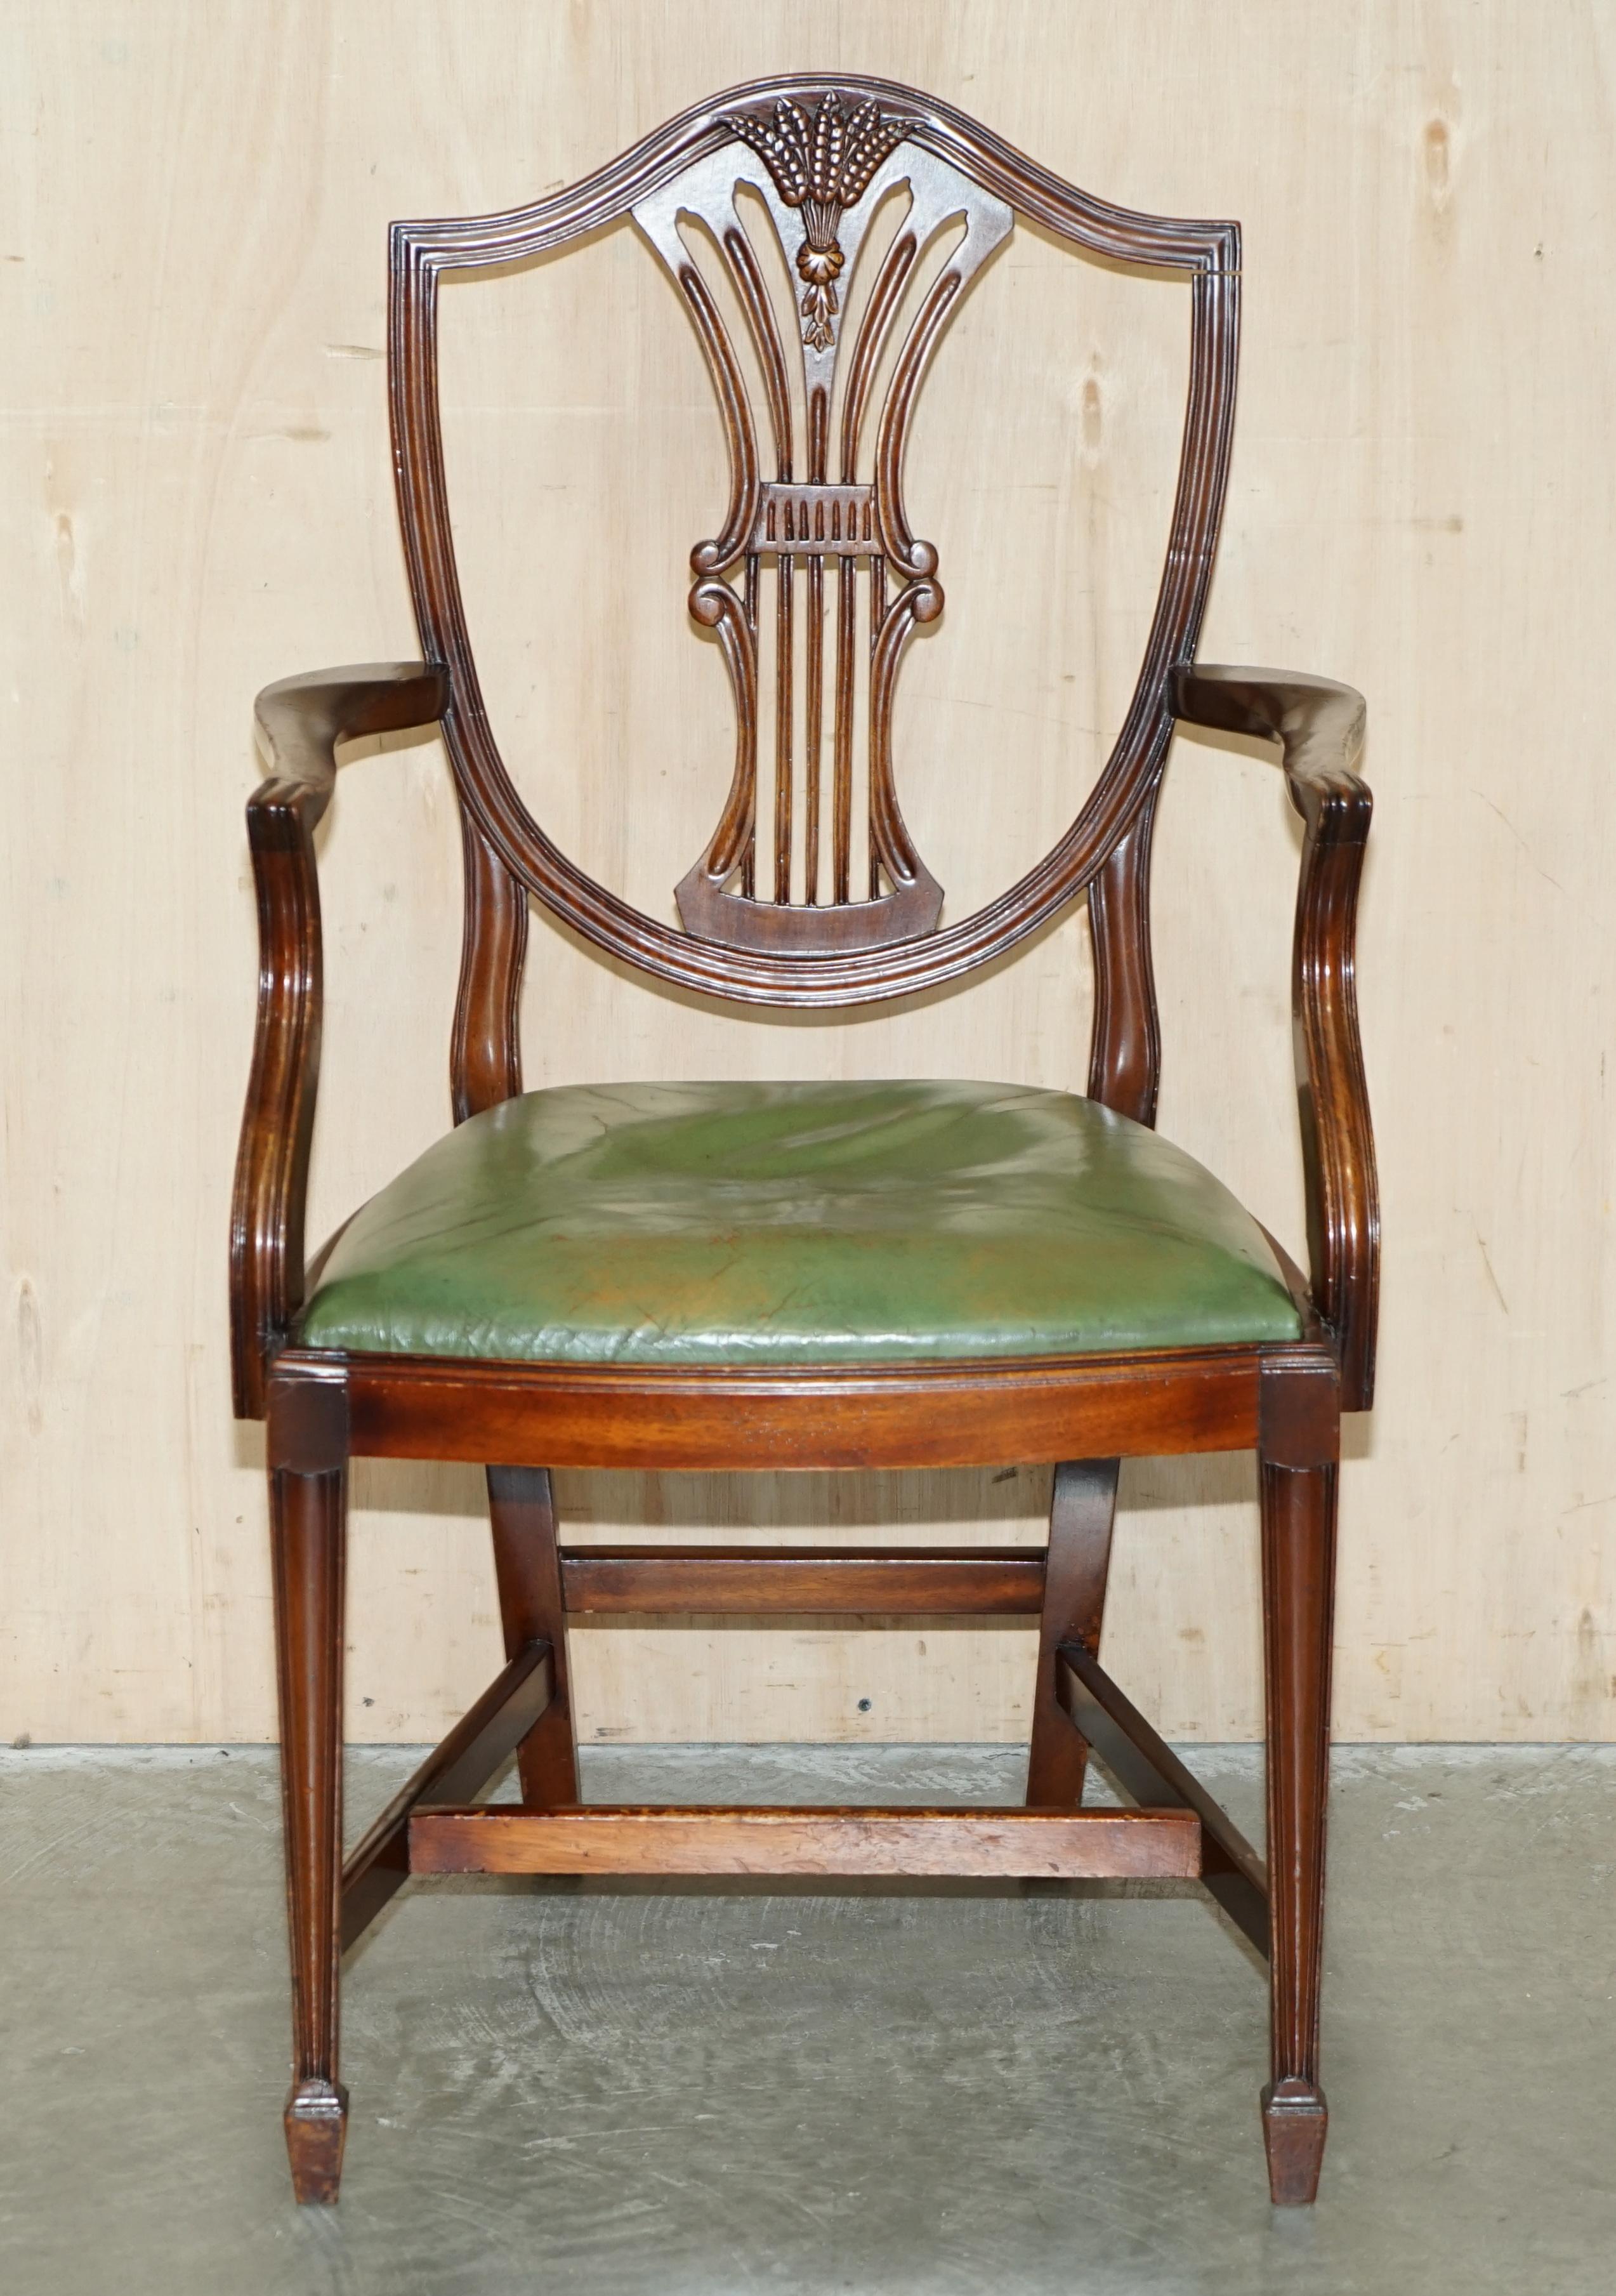 Royal House Antiques

Royal House Antiques freut sich, diesen schönen Vintage-Sessel im Weizengras-Stil von George Hepplewhite aus Mahagoni mit grünem Ledersitzpolster aus der Zeit als Schreibtischstuhl zum Verkauf anzubieten 

Bitte beachten Sie